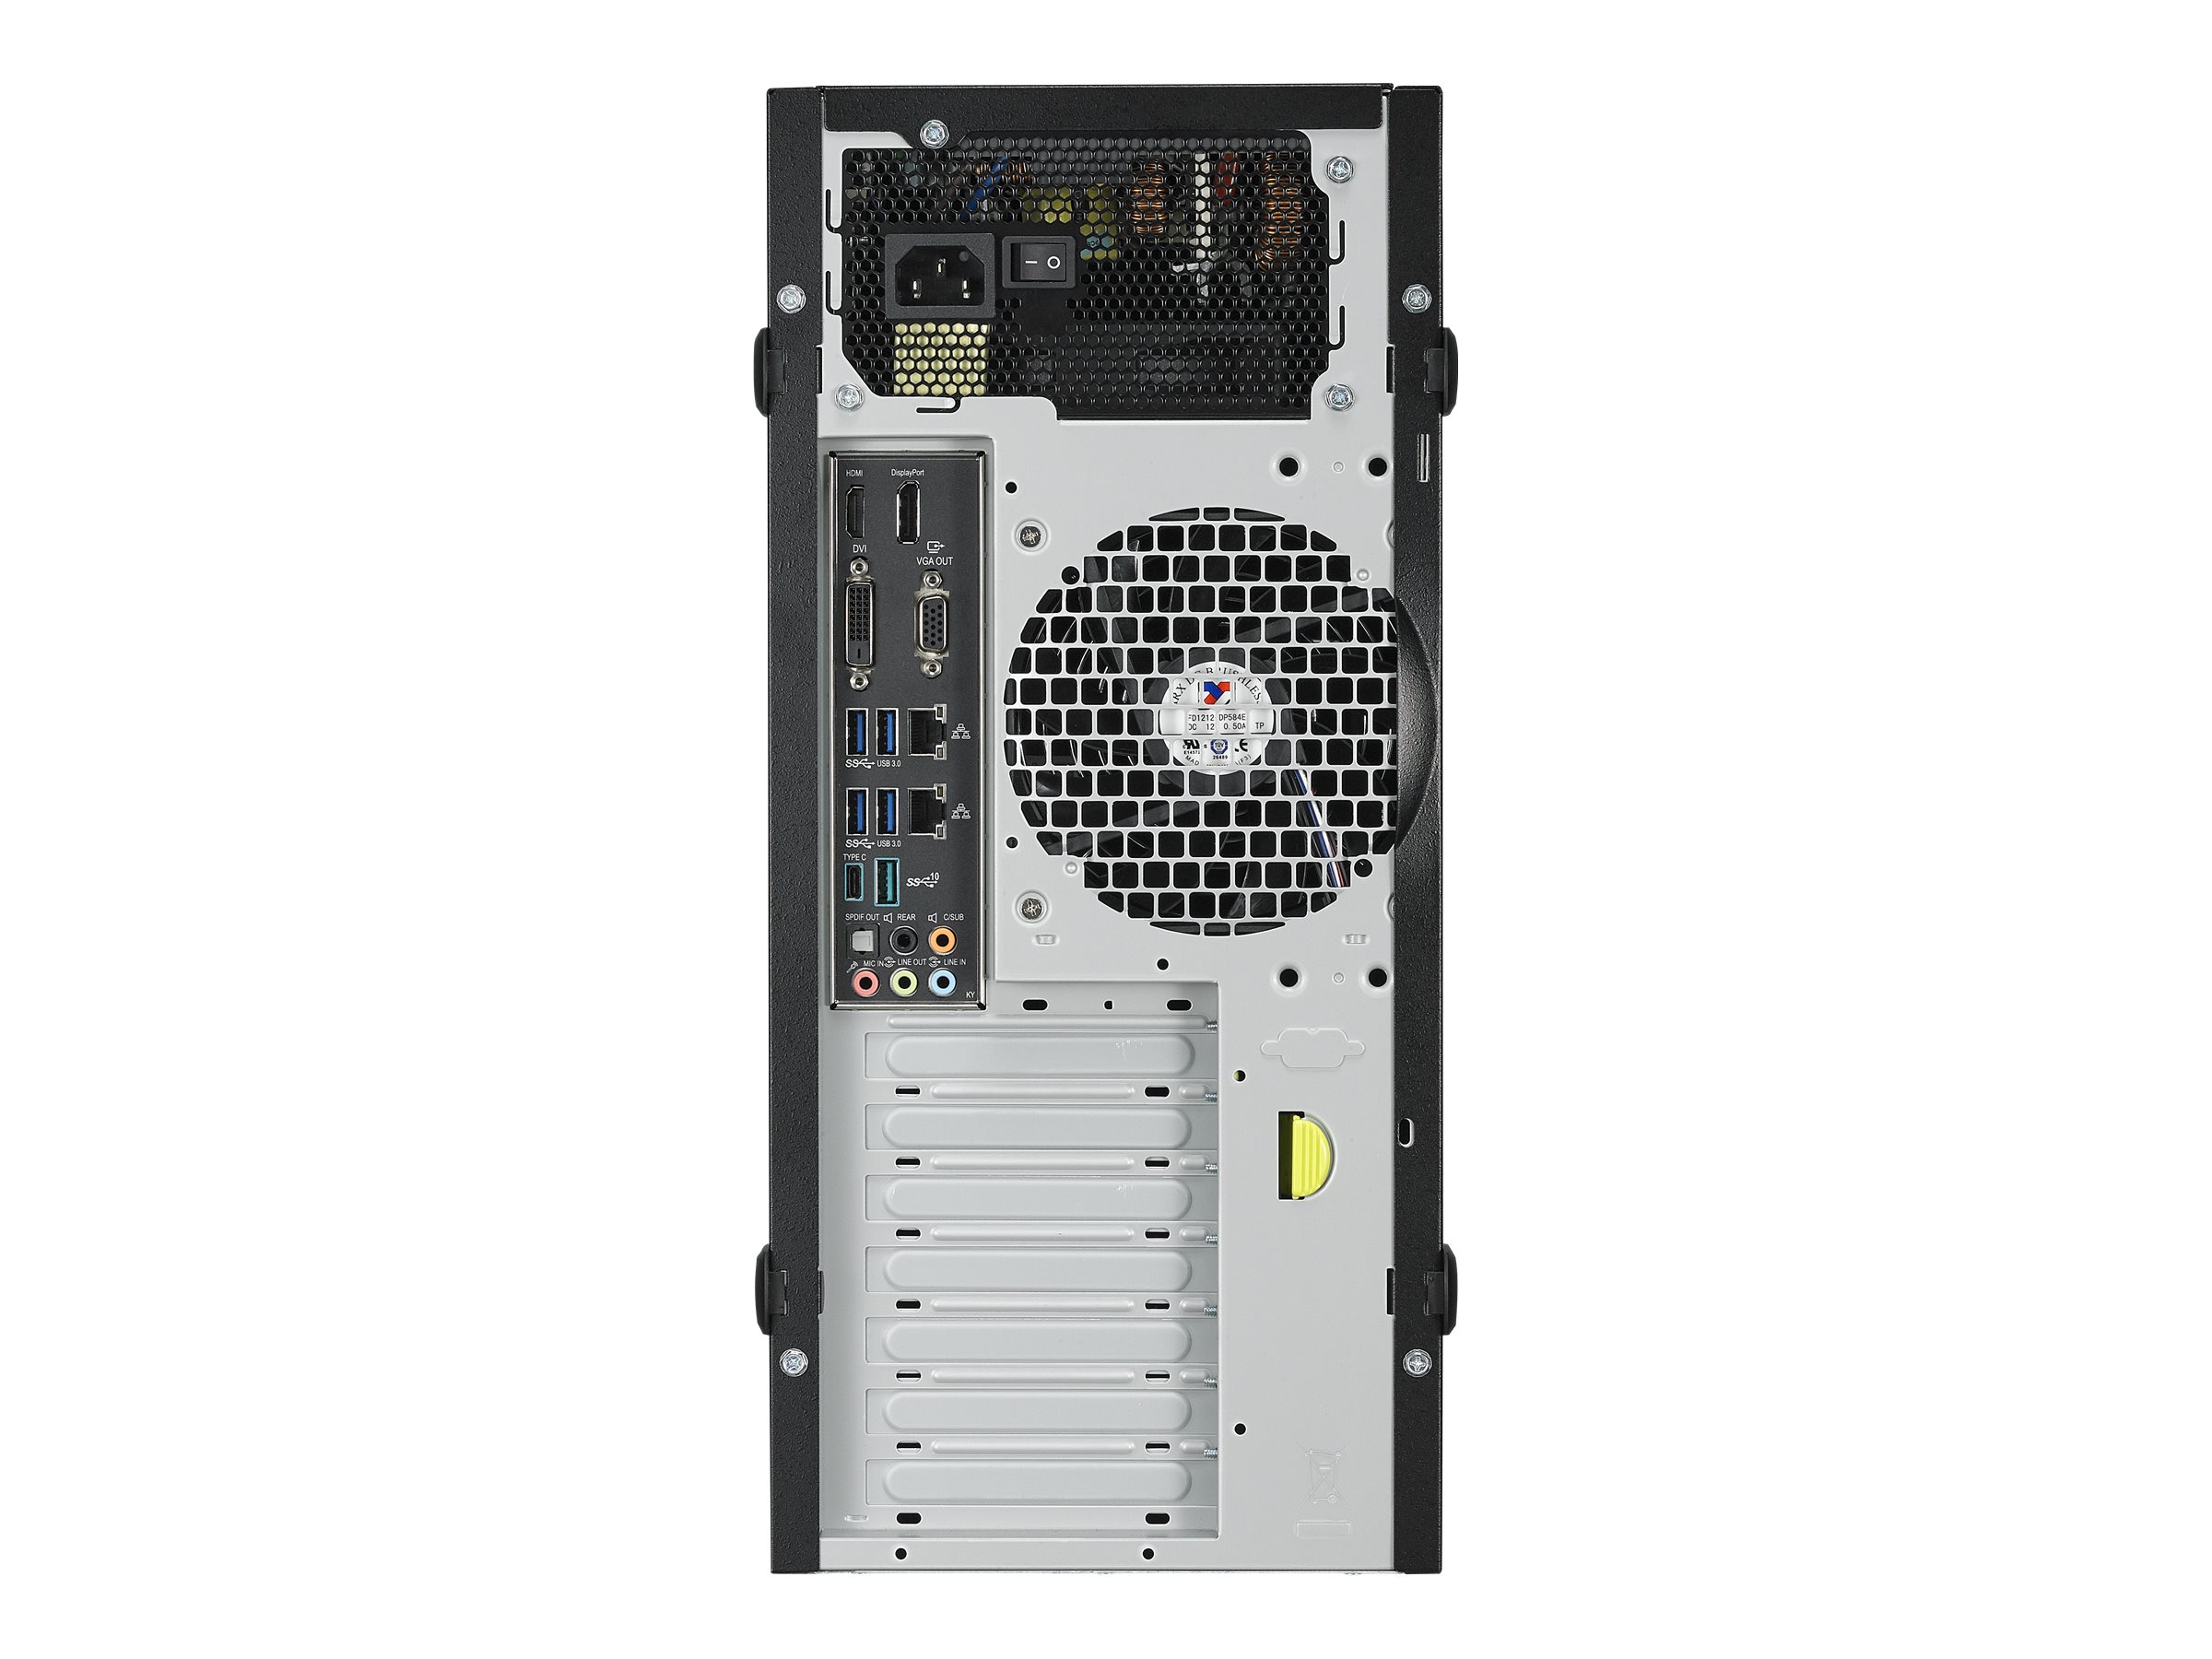 ASUS E500 G5-M3240 - Tour - 1 x Xeon E-2124G / jusqu'à 4.5 GHz - RAM 8 Go - HDD 1 To - graveur de DVD - Quadro P2000 - Gigabit Ethernet - Windows 10 Pro pour Stations de travail - moniteur : aucun - 90SF00Q1-M03240 - Ordinateurs de bureau